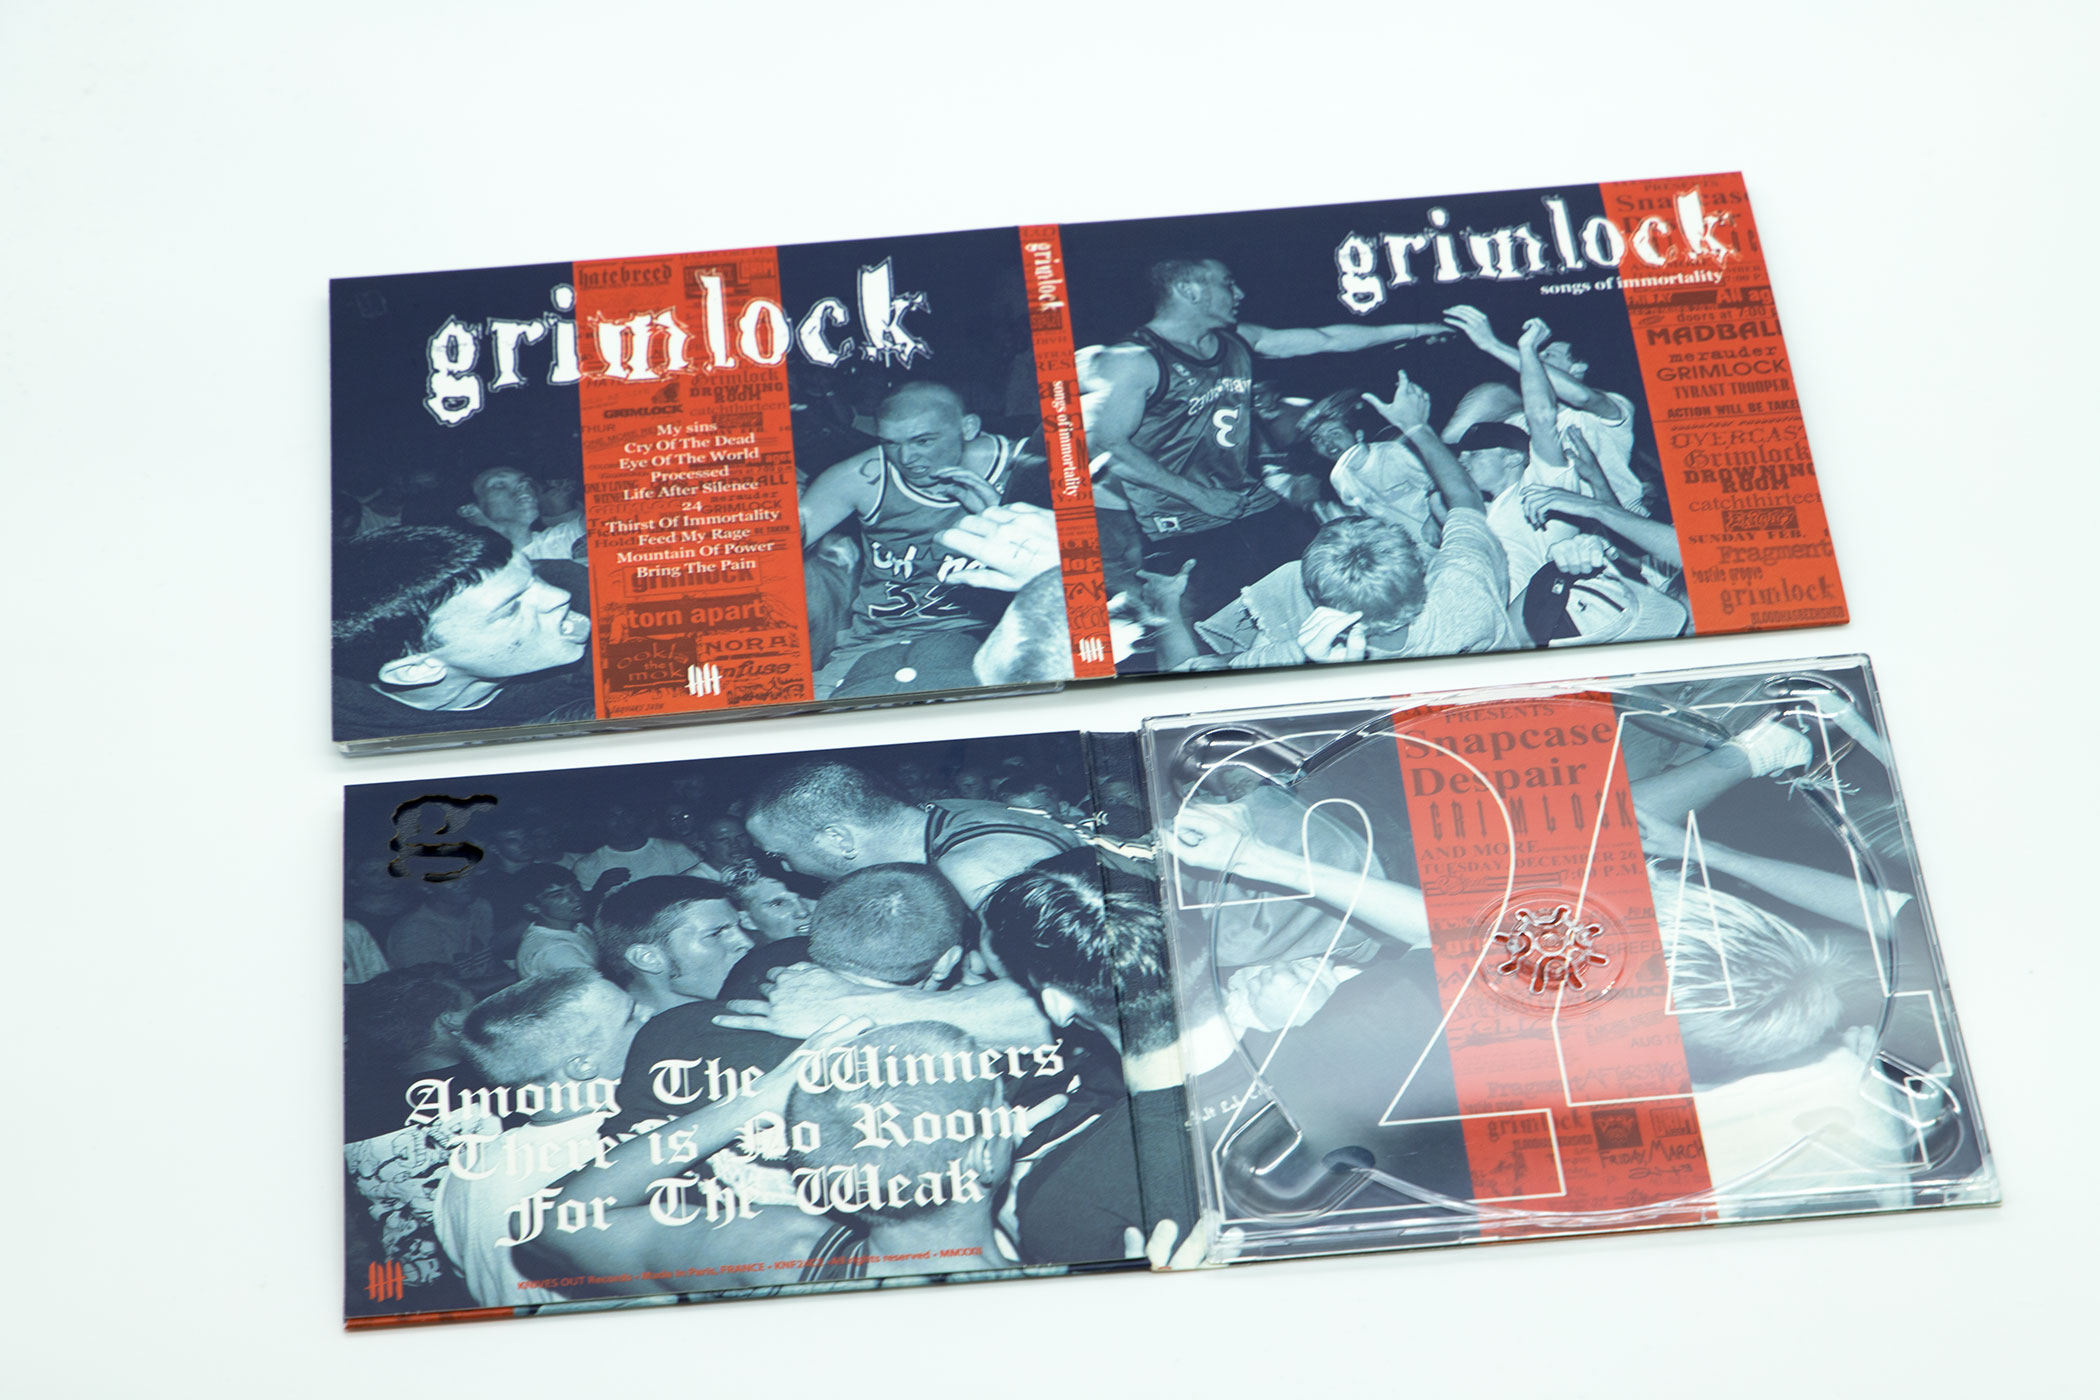 GRIMLOCK "Songs Of Immortality" Die-cut Digipack Enhanced CD